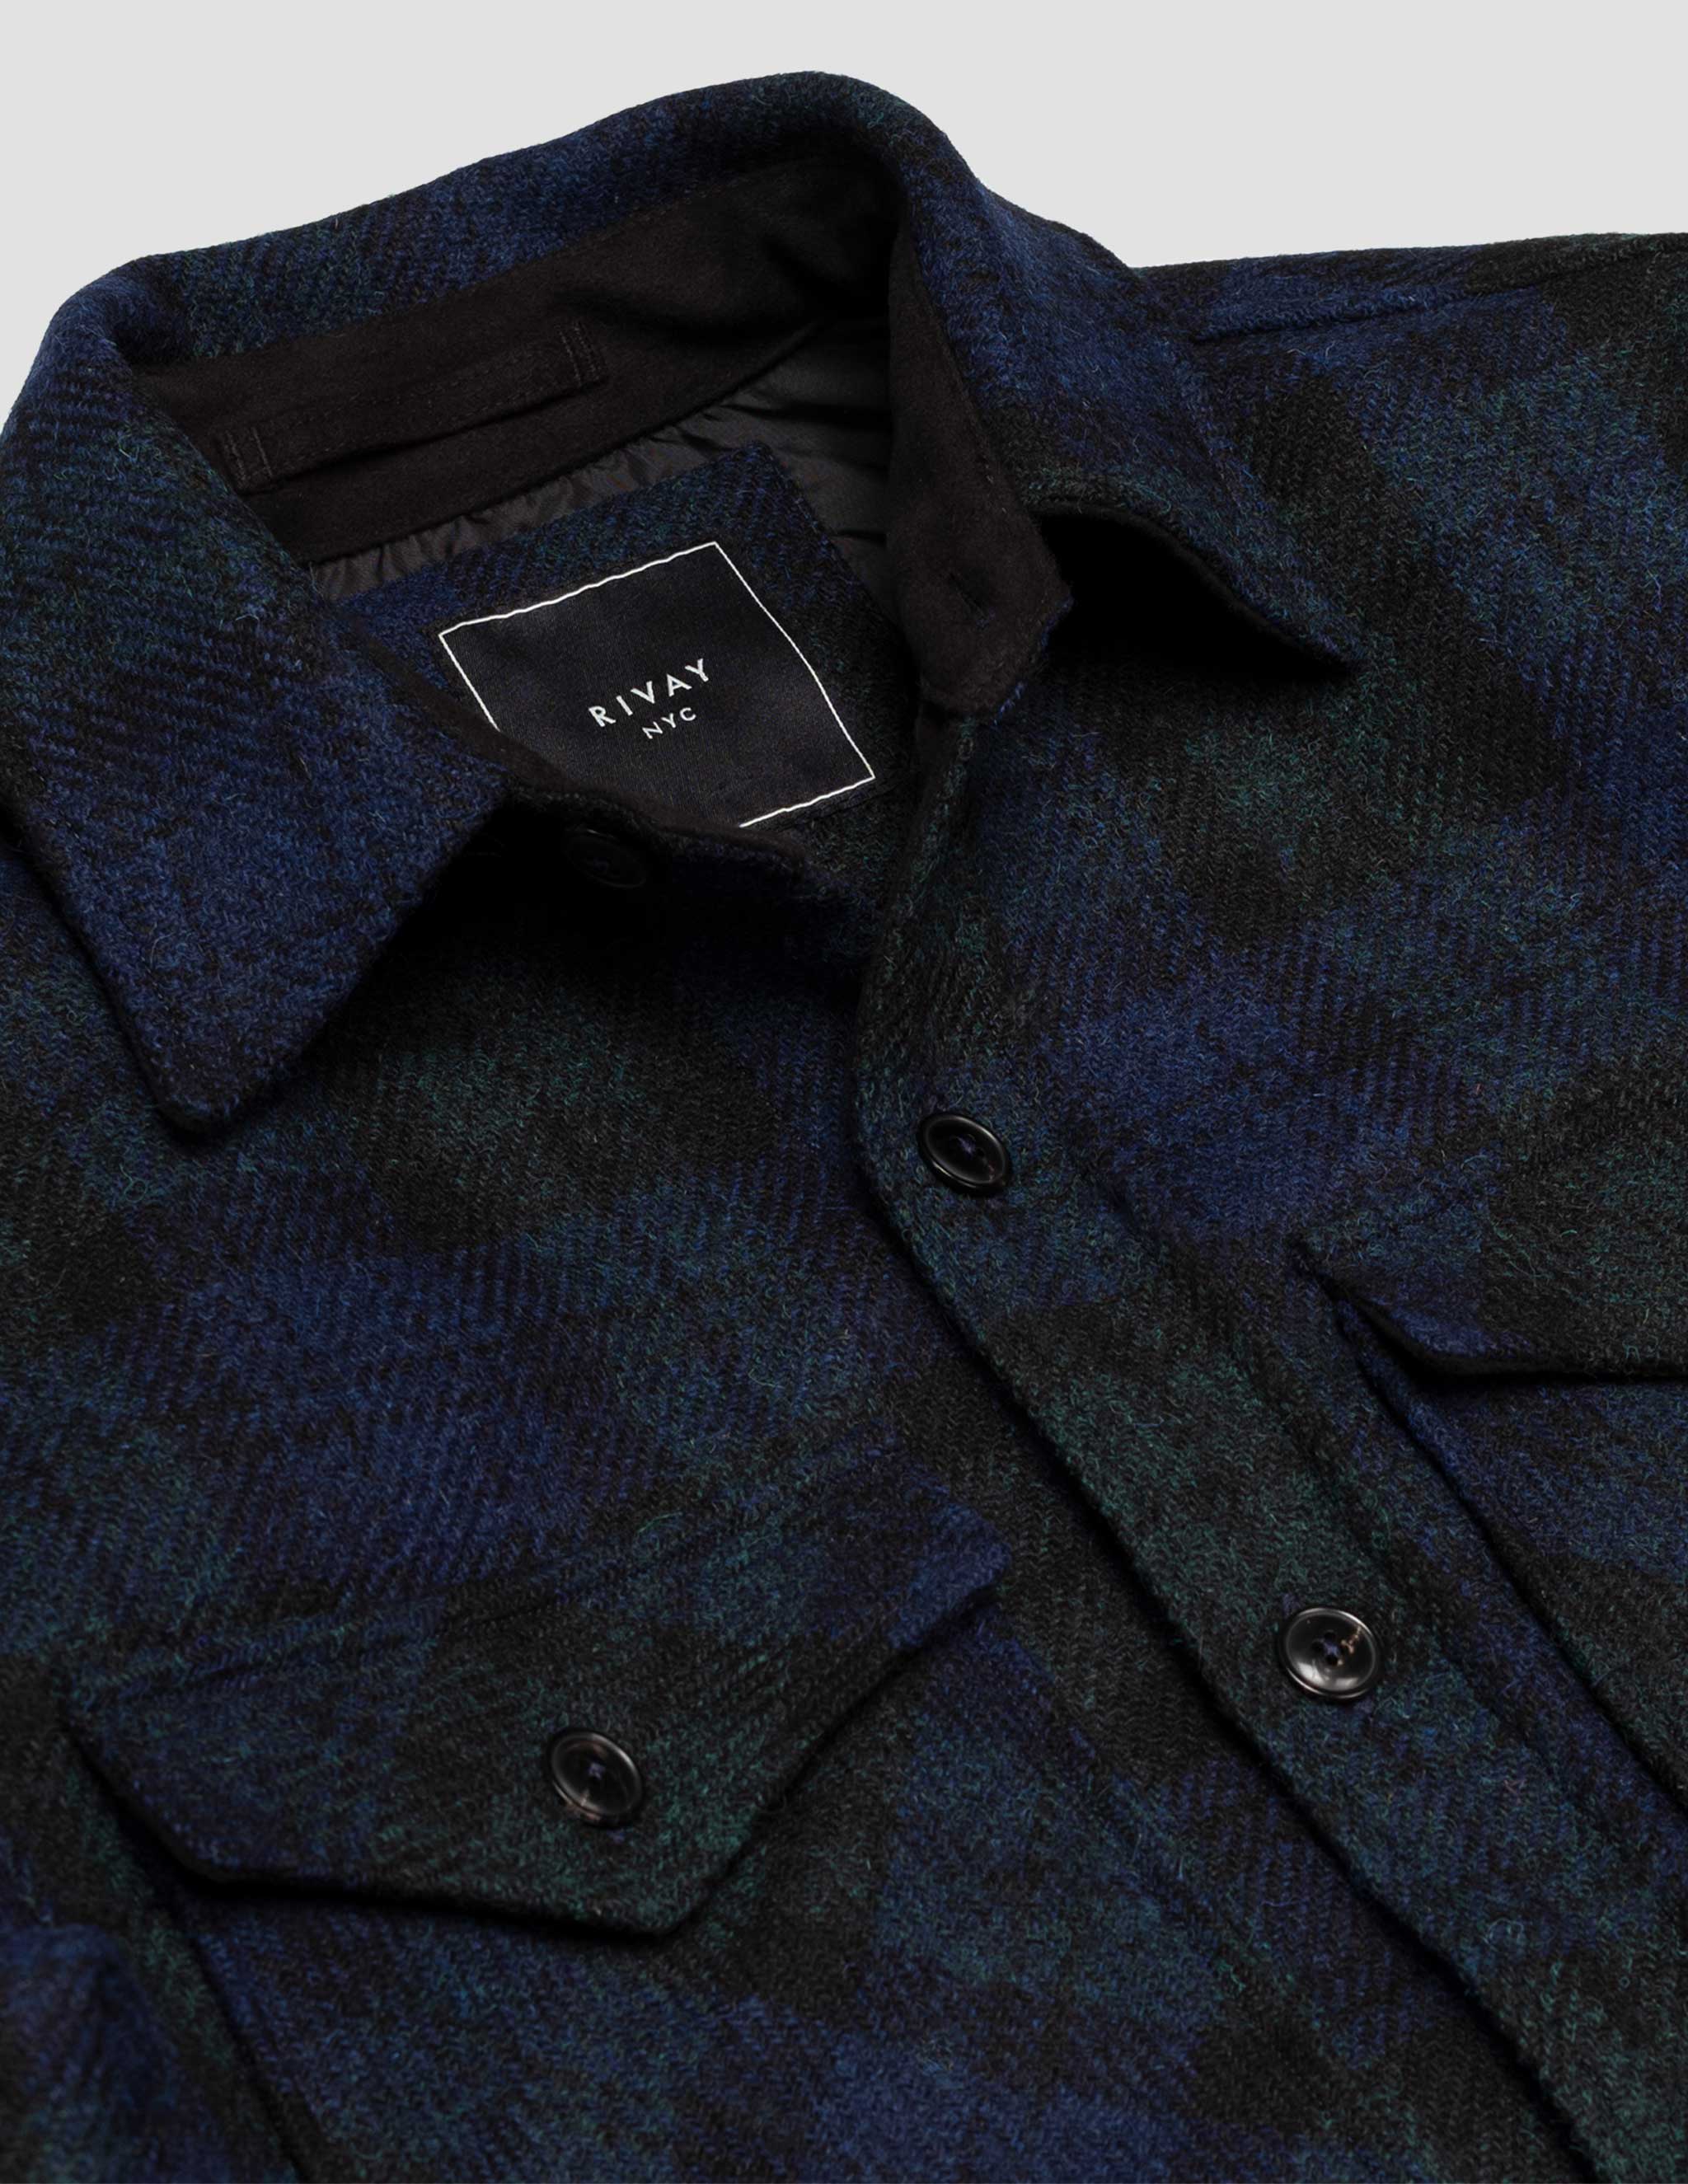 Harris Tweed Wool CPO Shirt Jacket in Blackwatch Plaid